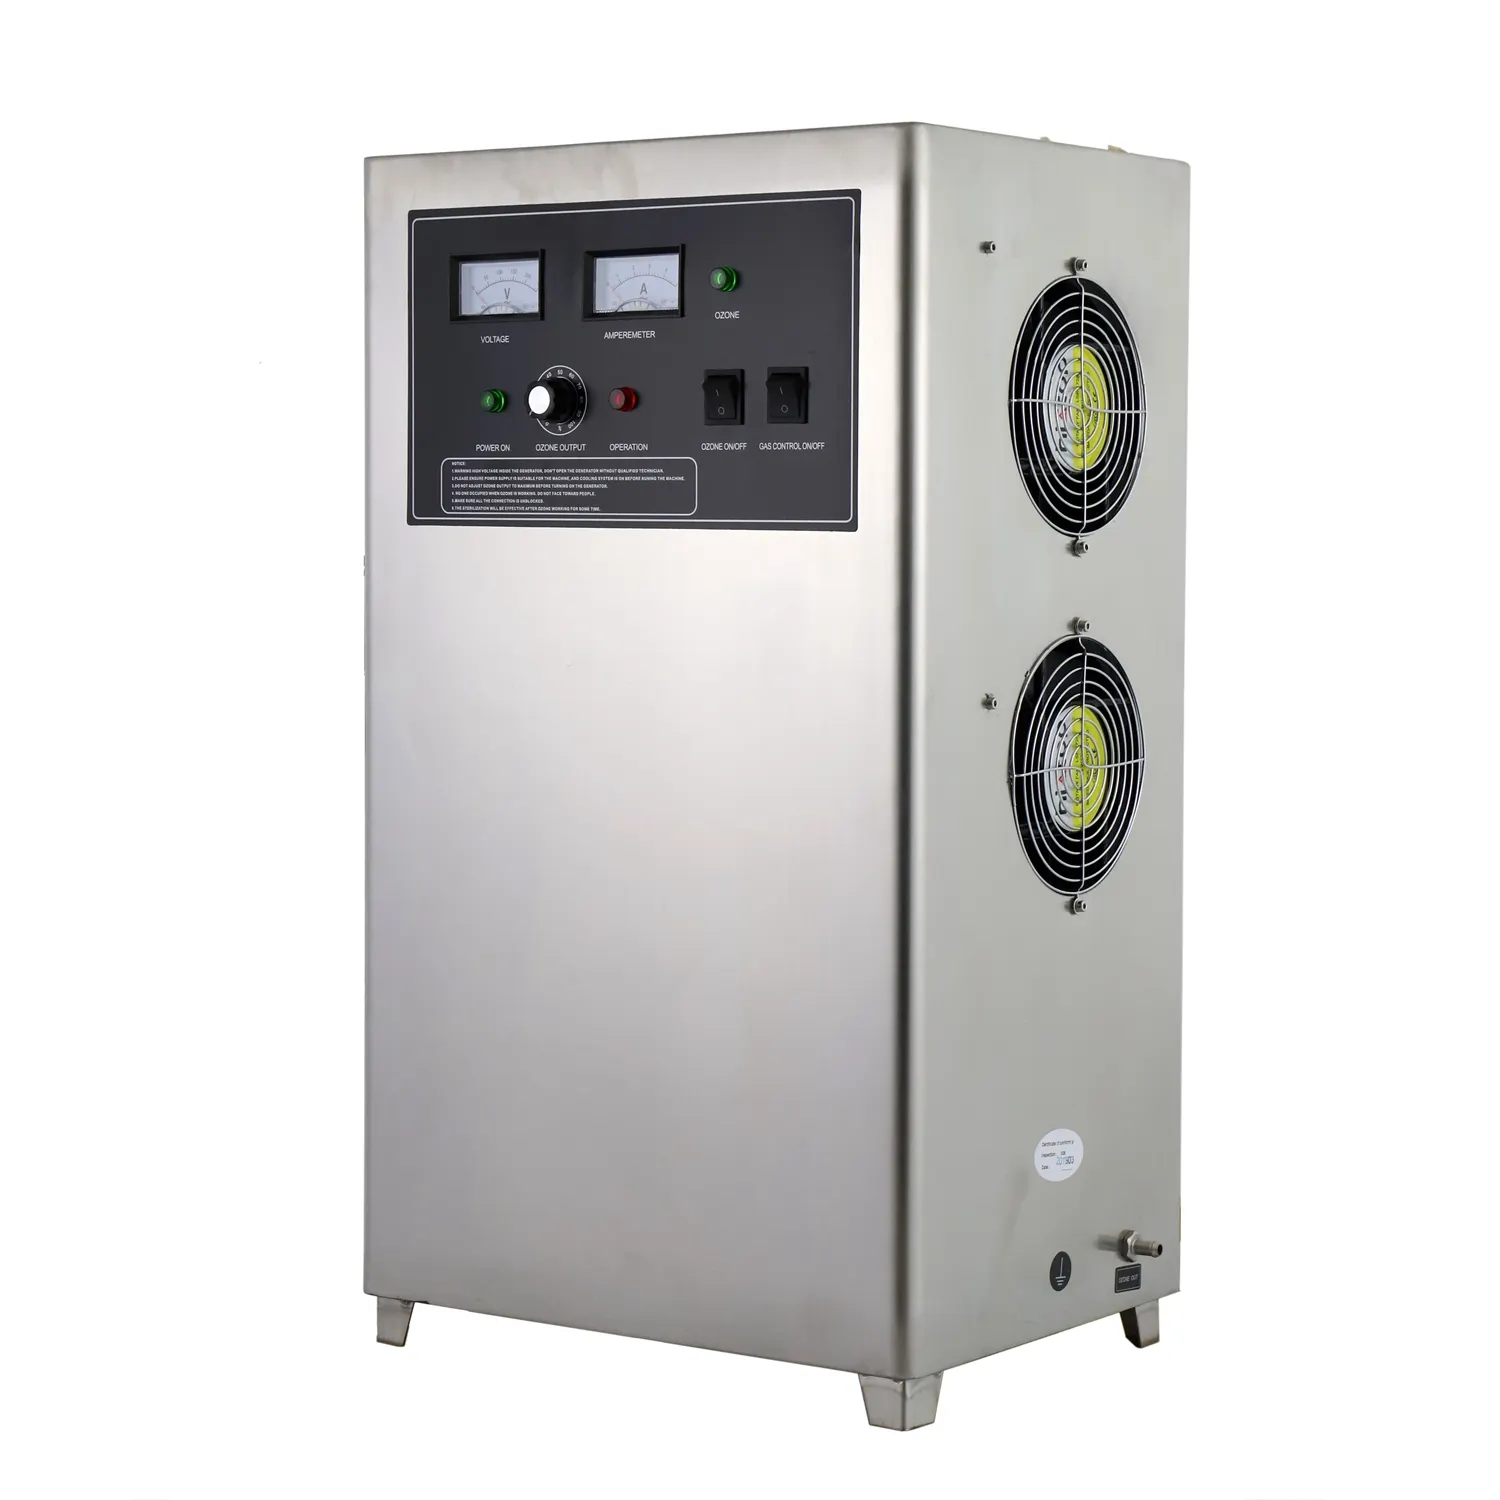 Generator ozon pemurni air ozon Stainless Steel, 20g/jam portabel untuk perawatan air mesin air limbah